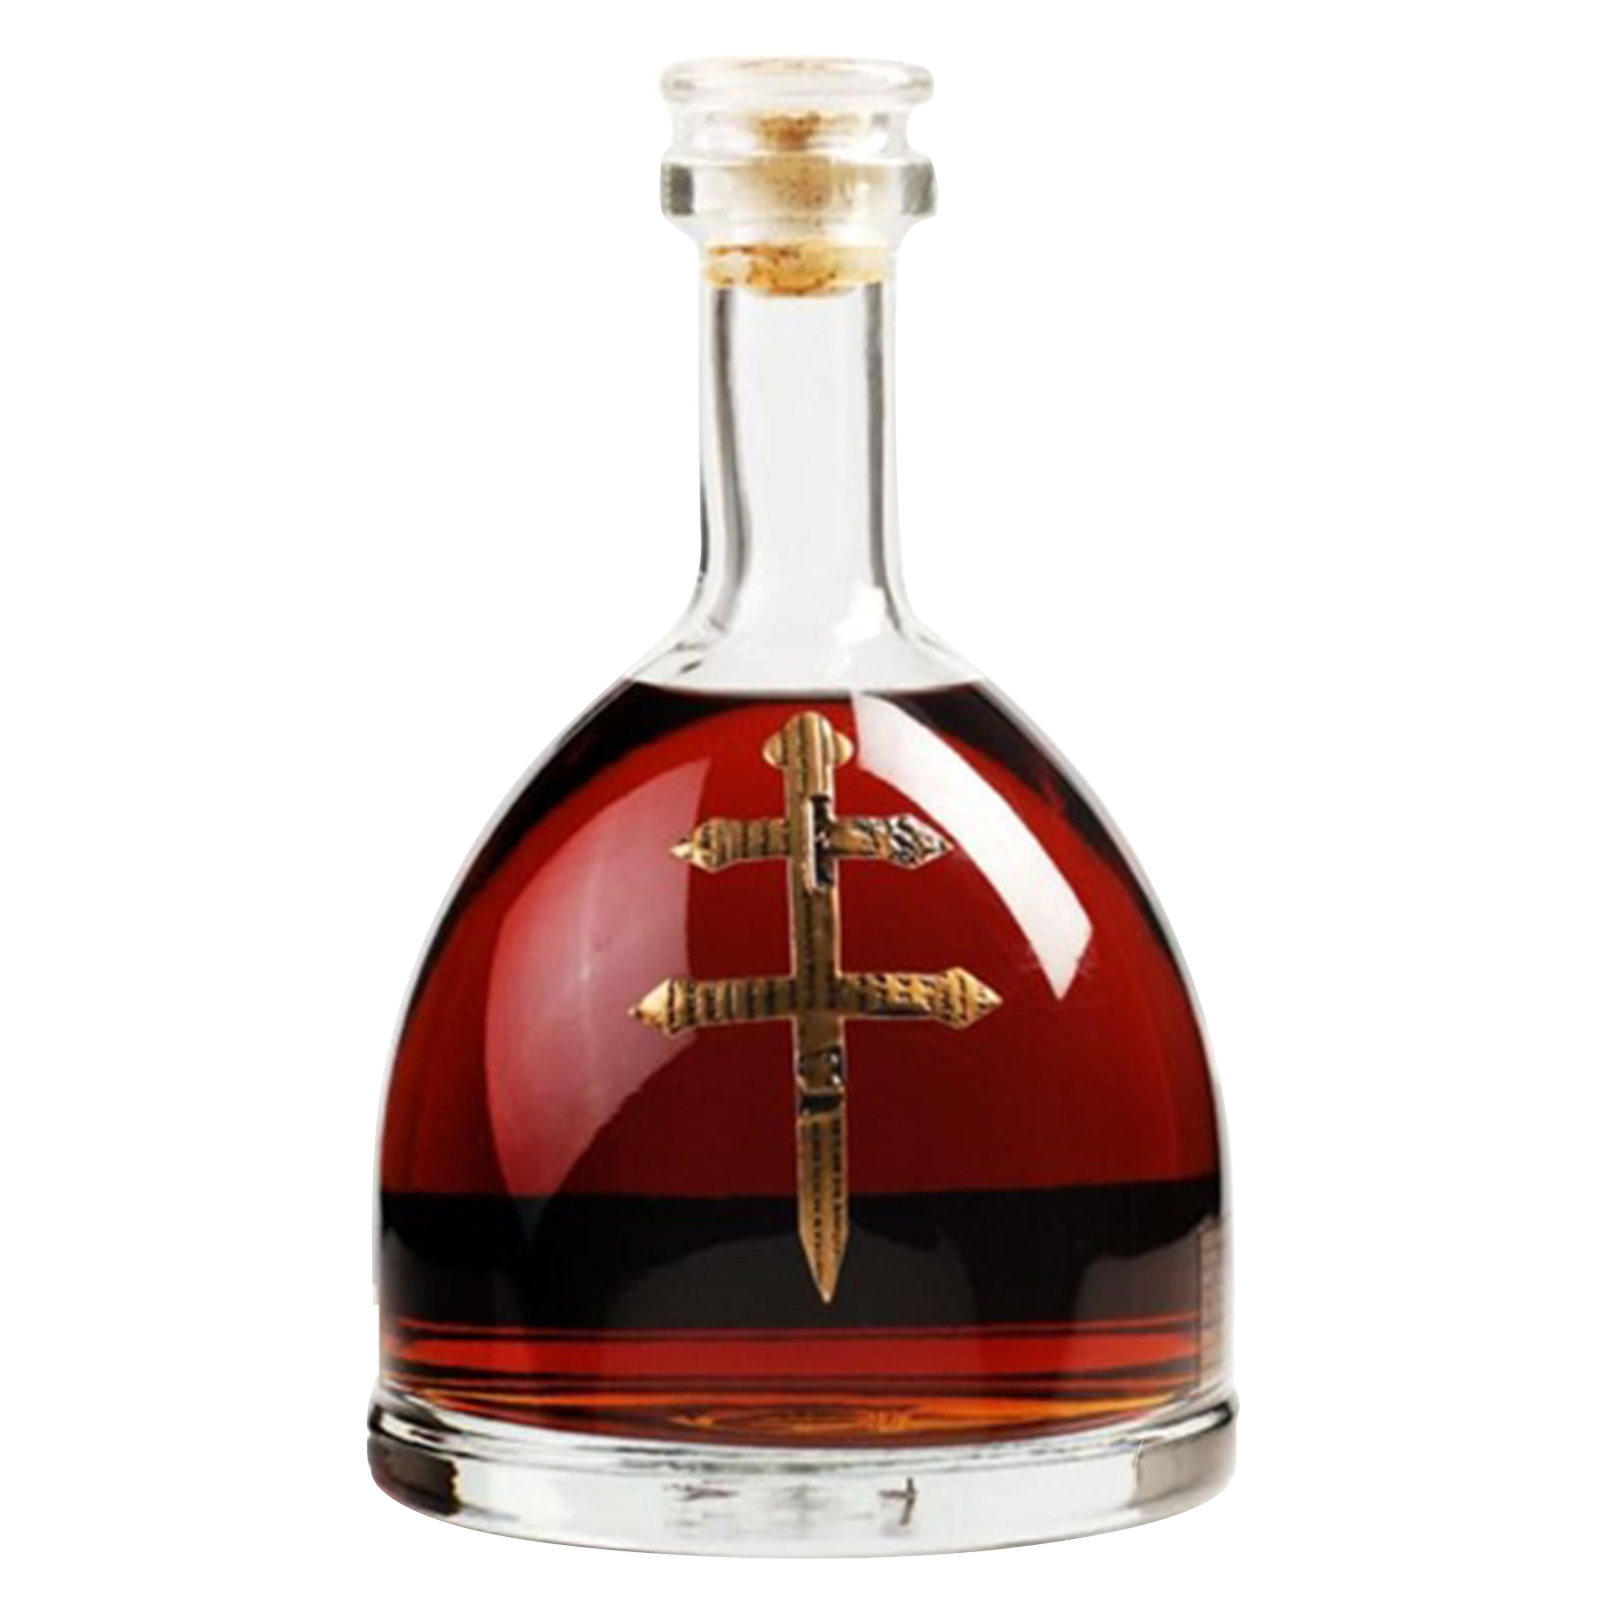 D'Usse VSOP Cognac 375ml (80 Proof)